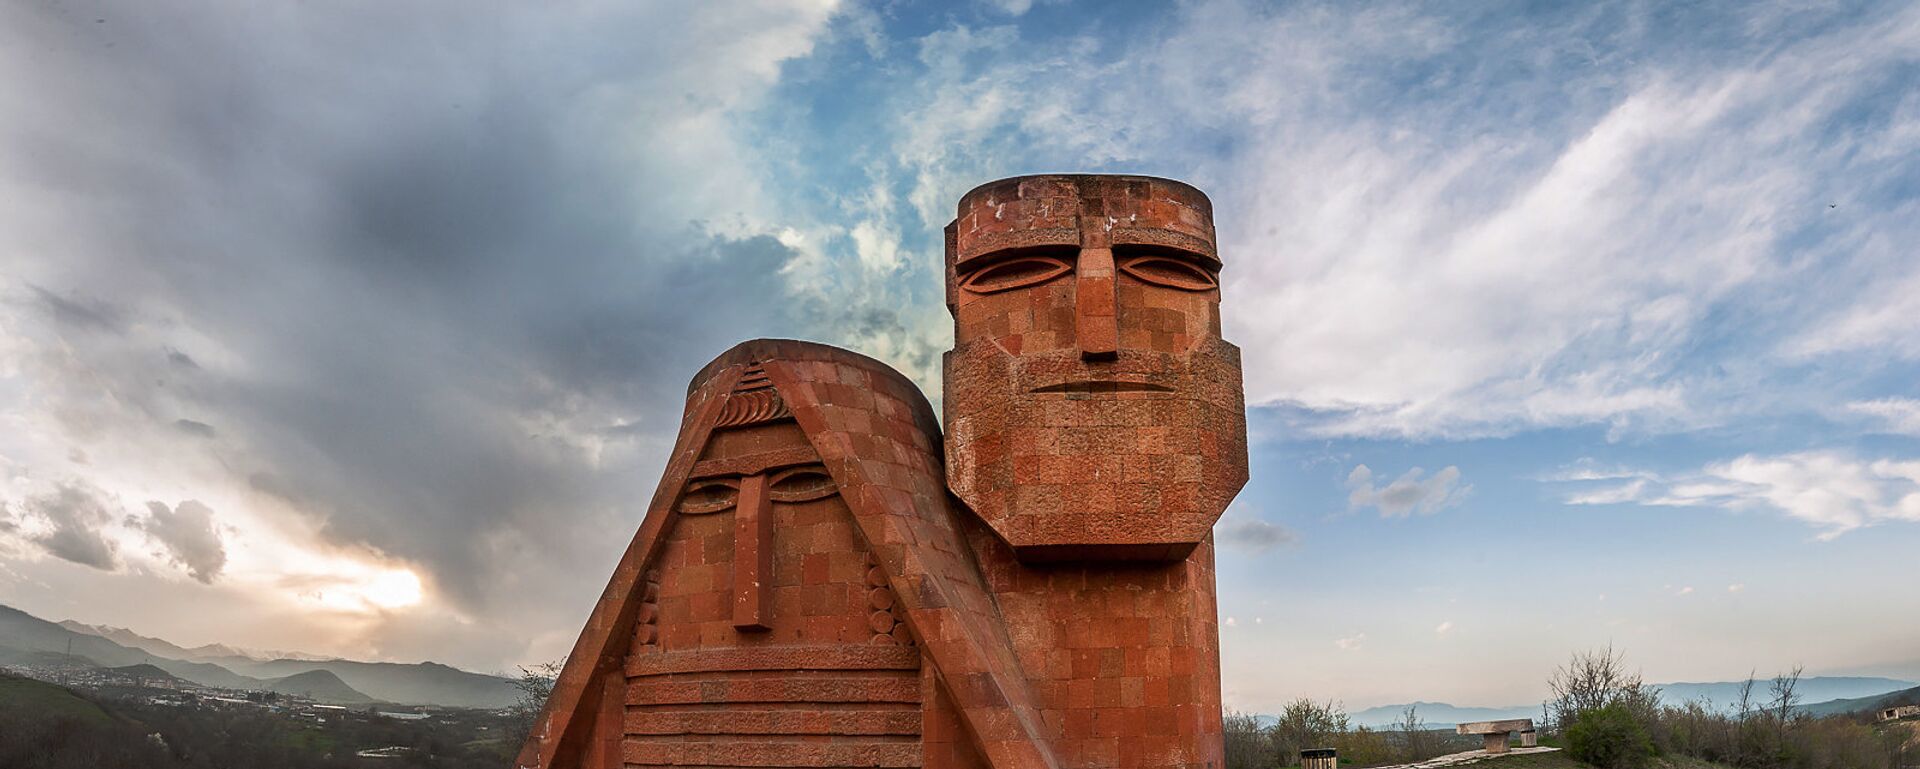 Памятник Мы-наши горы. Степанакерт. НКР - Sputnik Армения, 1920, 08.02.2021